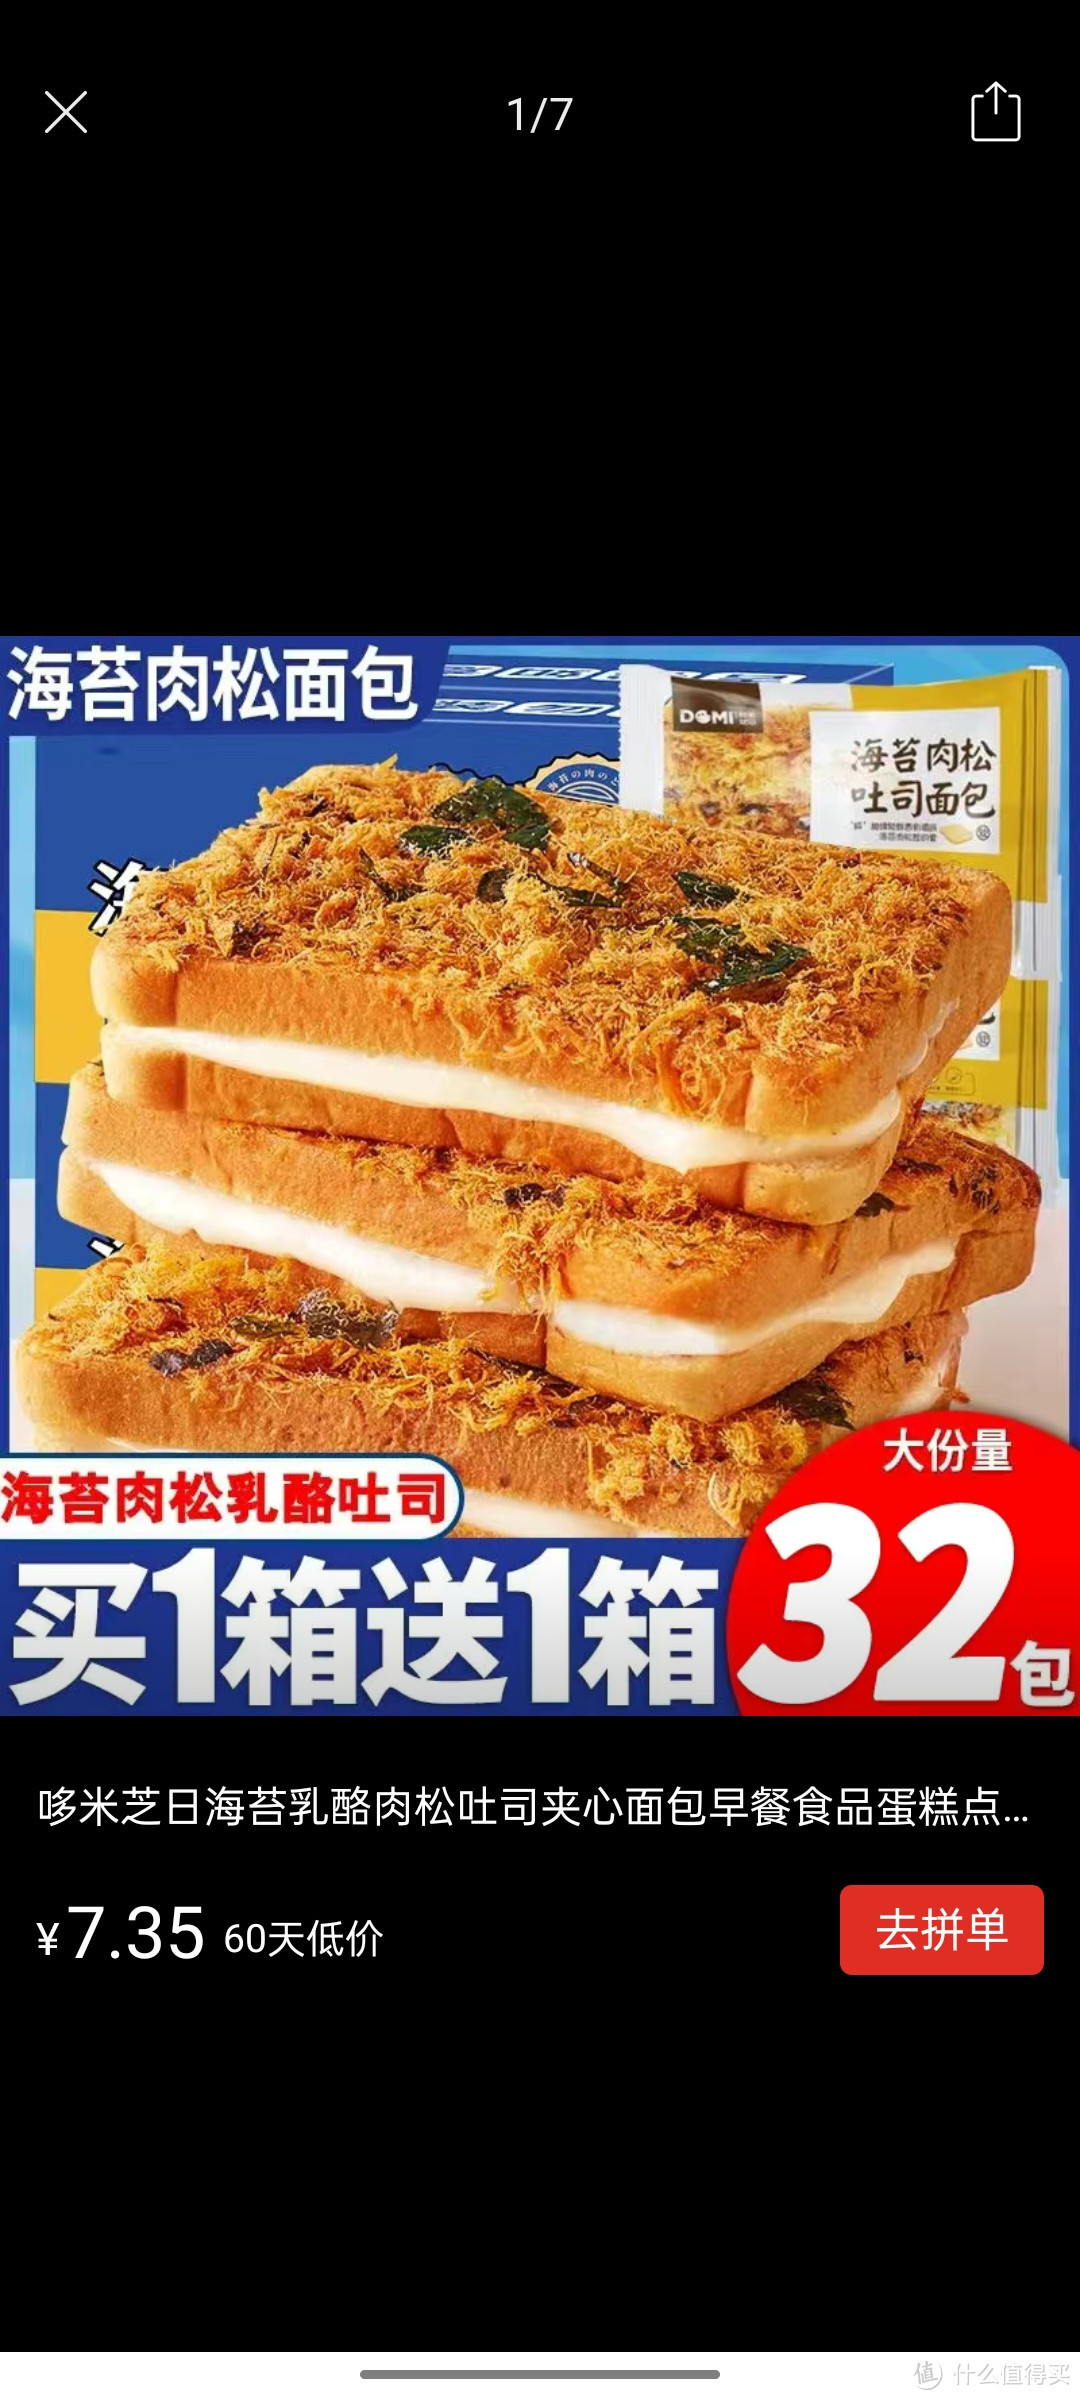 哆米芝日海苔乳酪肉松吐司夹心面包早餐食品蛋糕点学生宿舍零食品